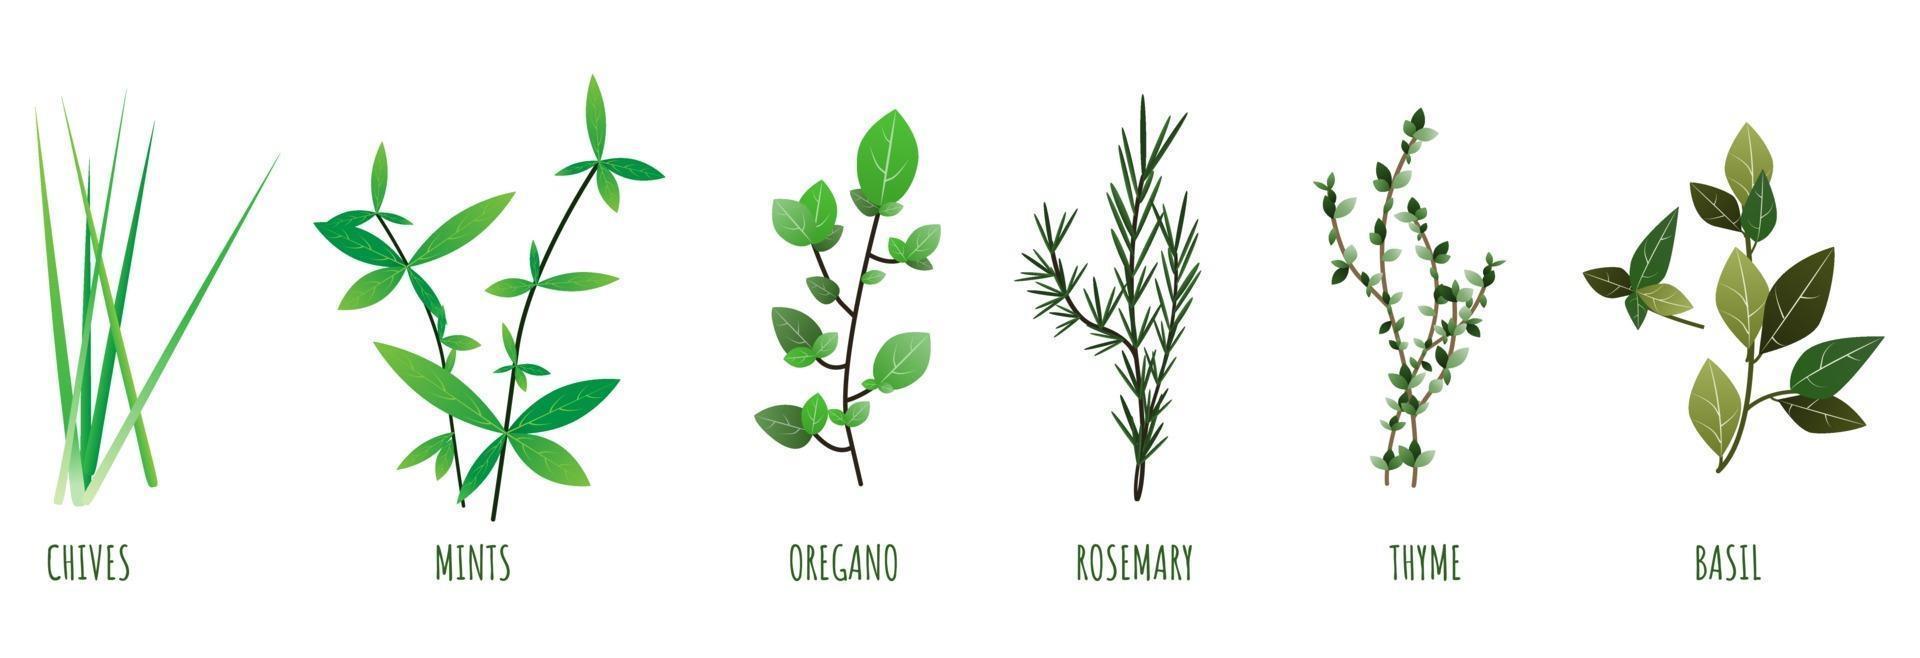 Ilustración de hierba de cebollino, menta, orégano, romero, albahaca y tomillo ilustración vectorial. vector